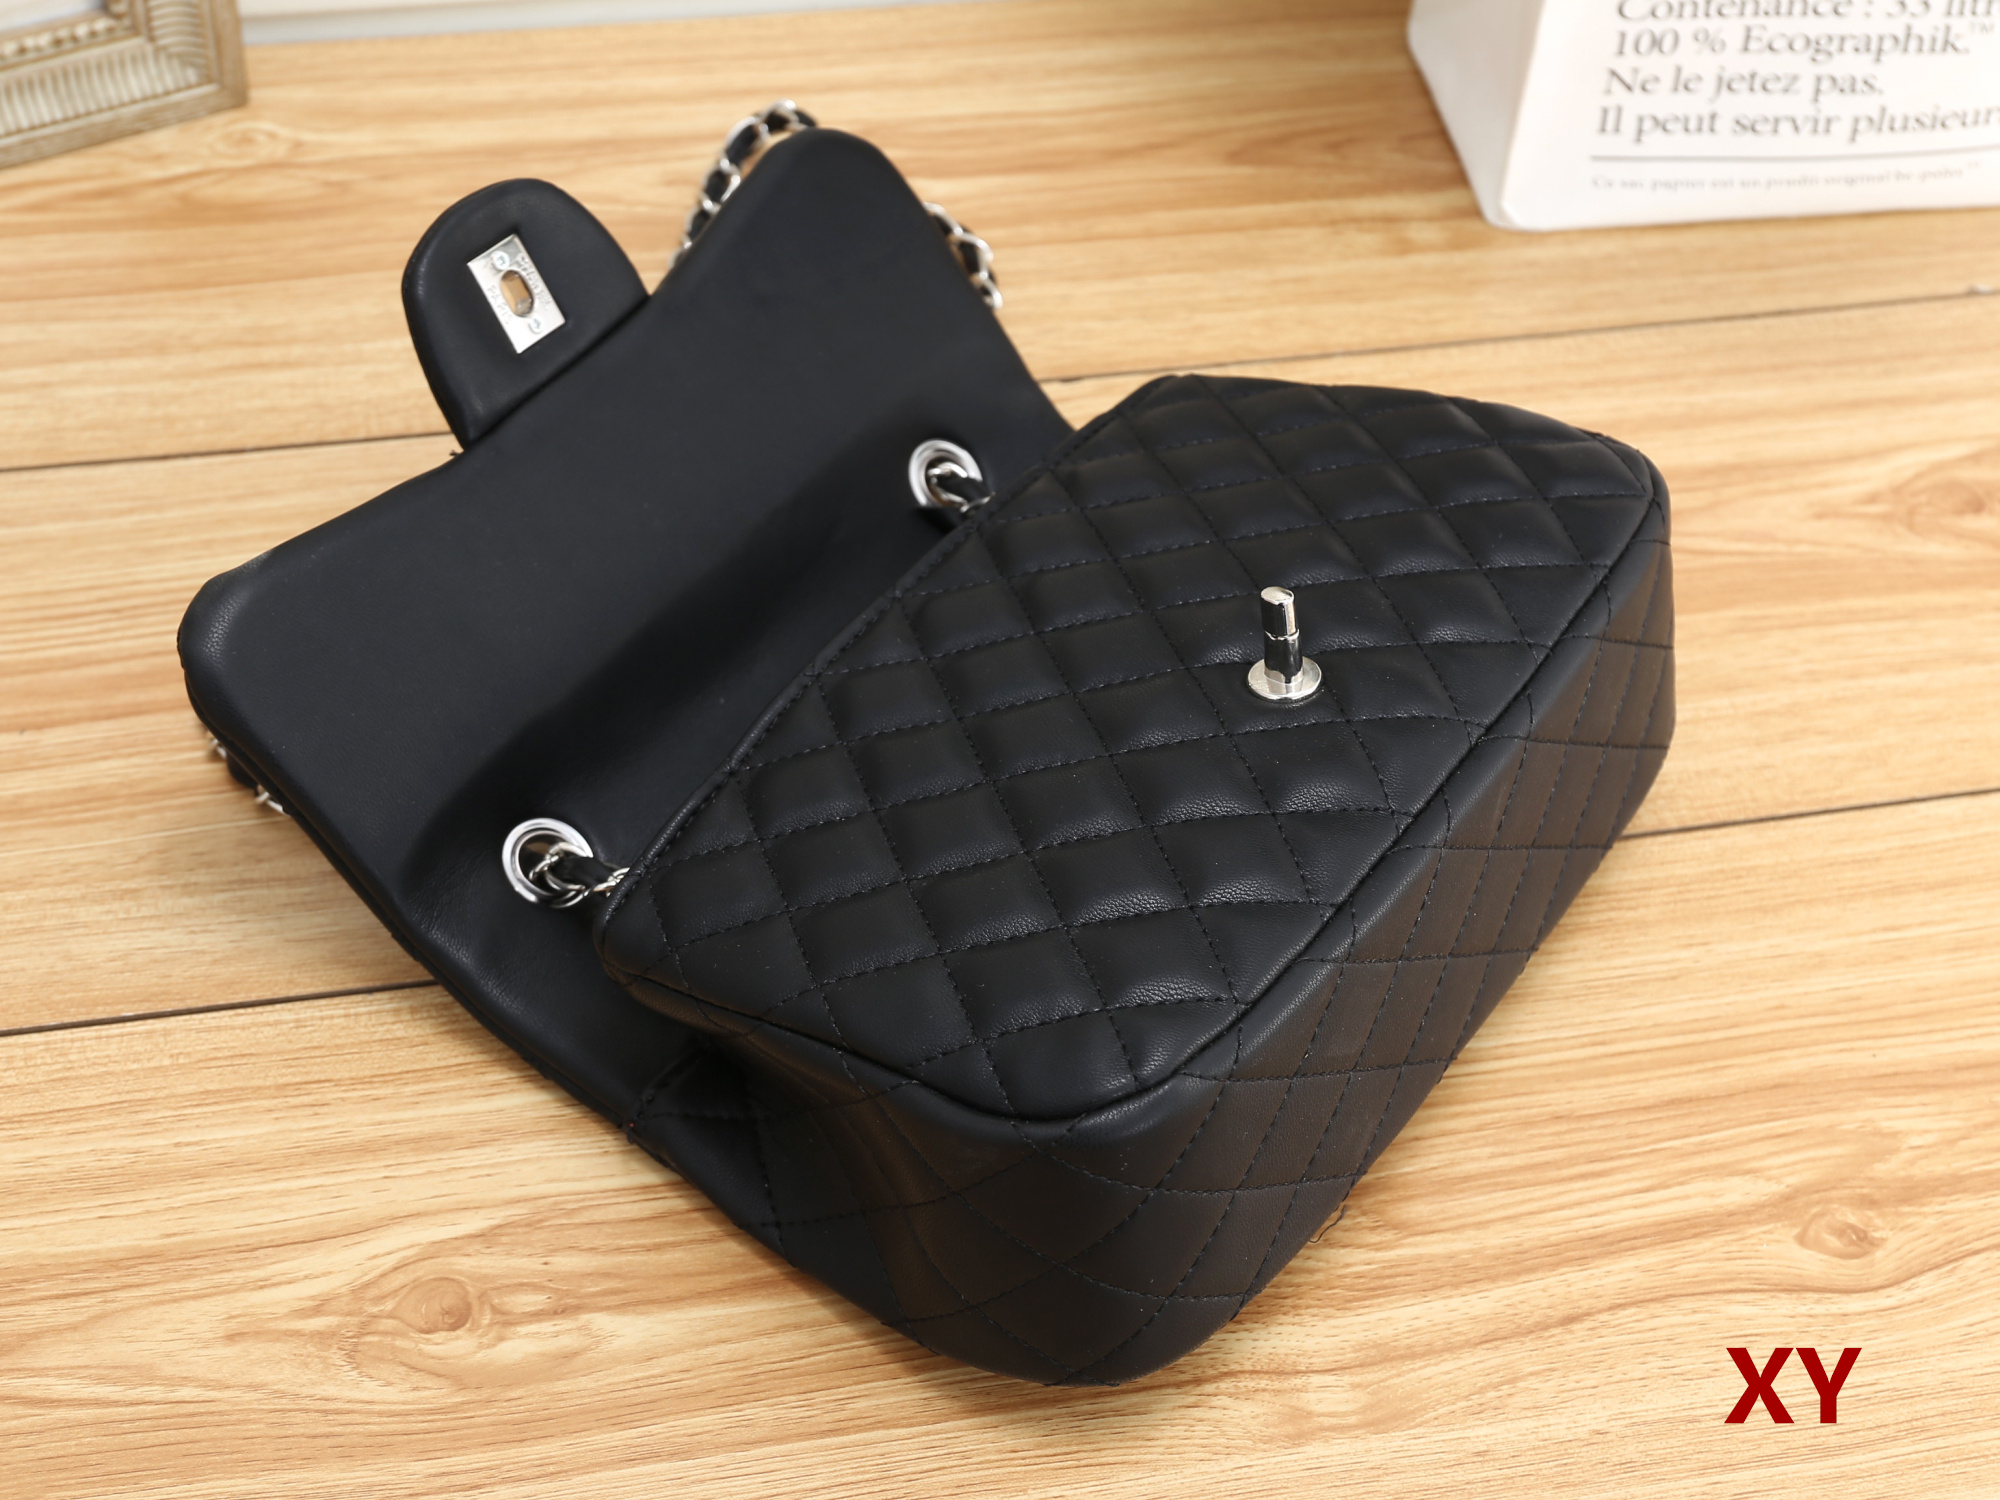 XY 3828# Hochwertige Damen-Einzelhandtasche, Schulterrucksack, Tasche, Geldbörse, Geldbörse